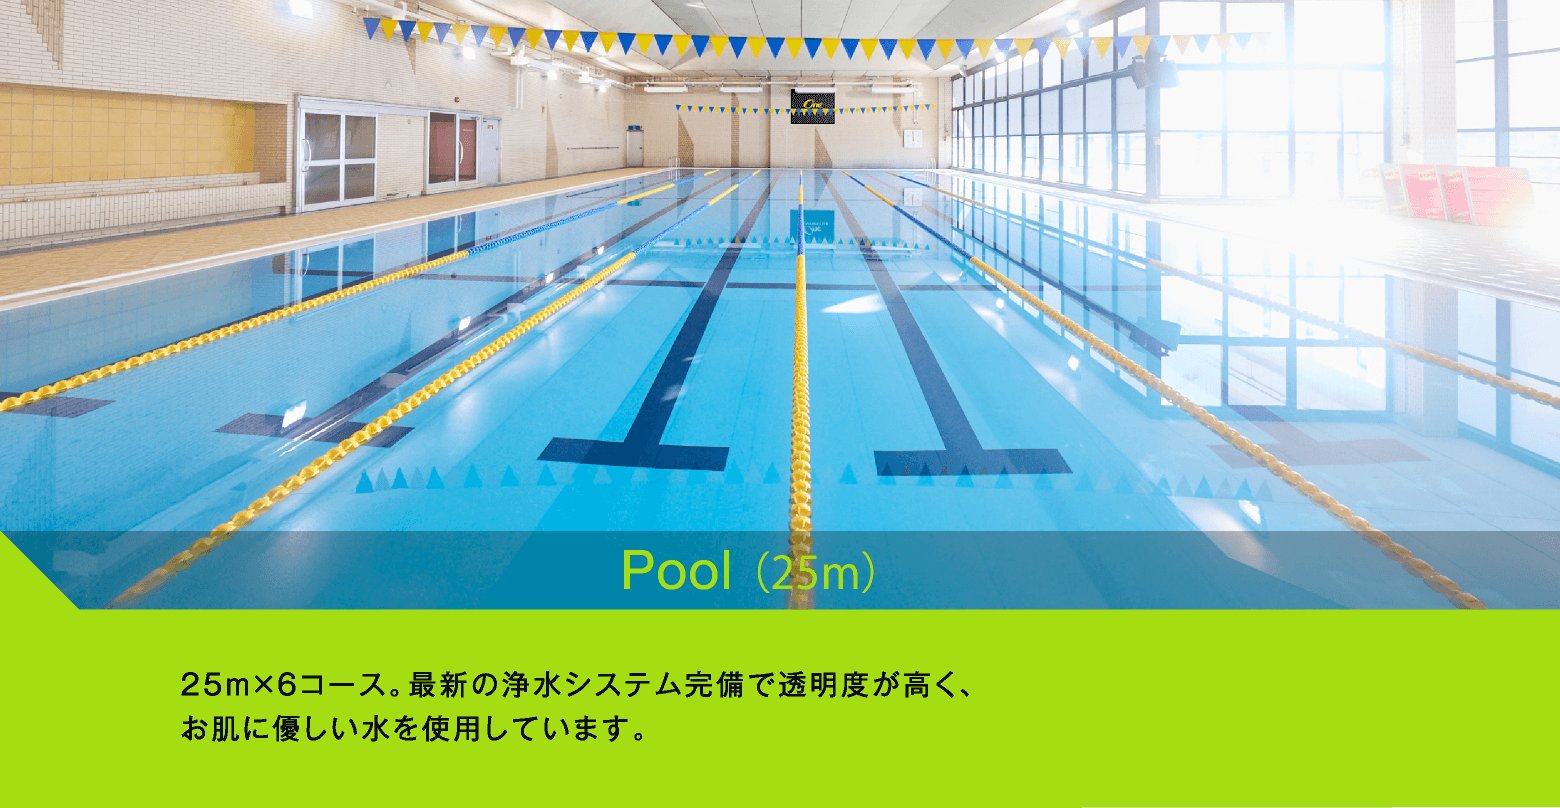 Pool(25m)　25m×6コース。最新の浄水システム完備で透明度が高く、お肌に優しい水を使用しています。
